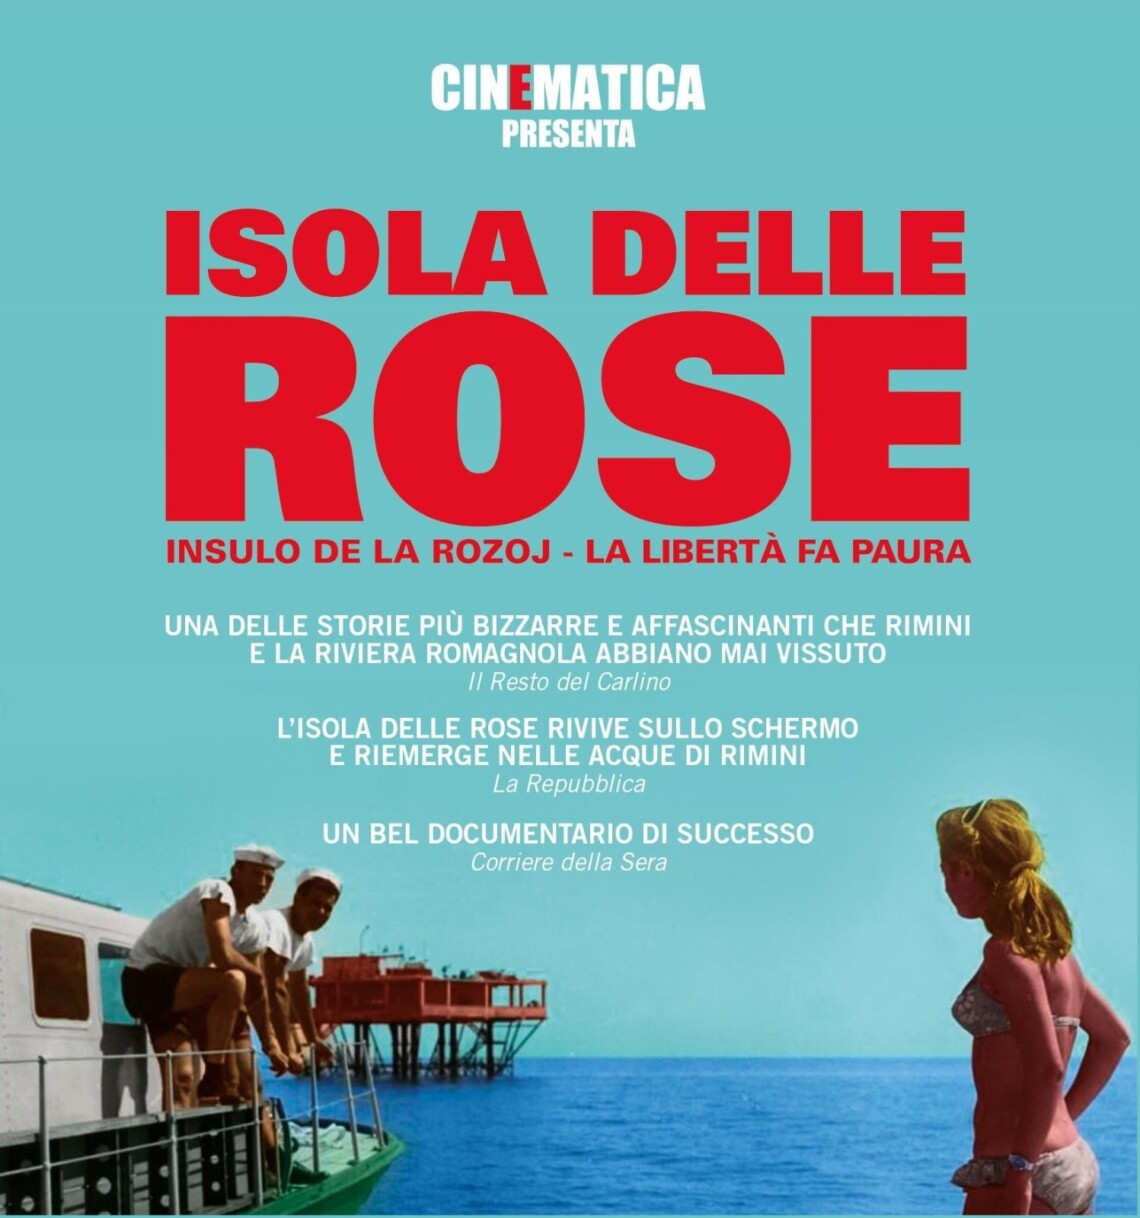 Like in the Movies - L’incredibile storia dell’isola delle rose